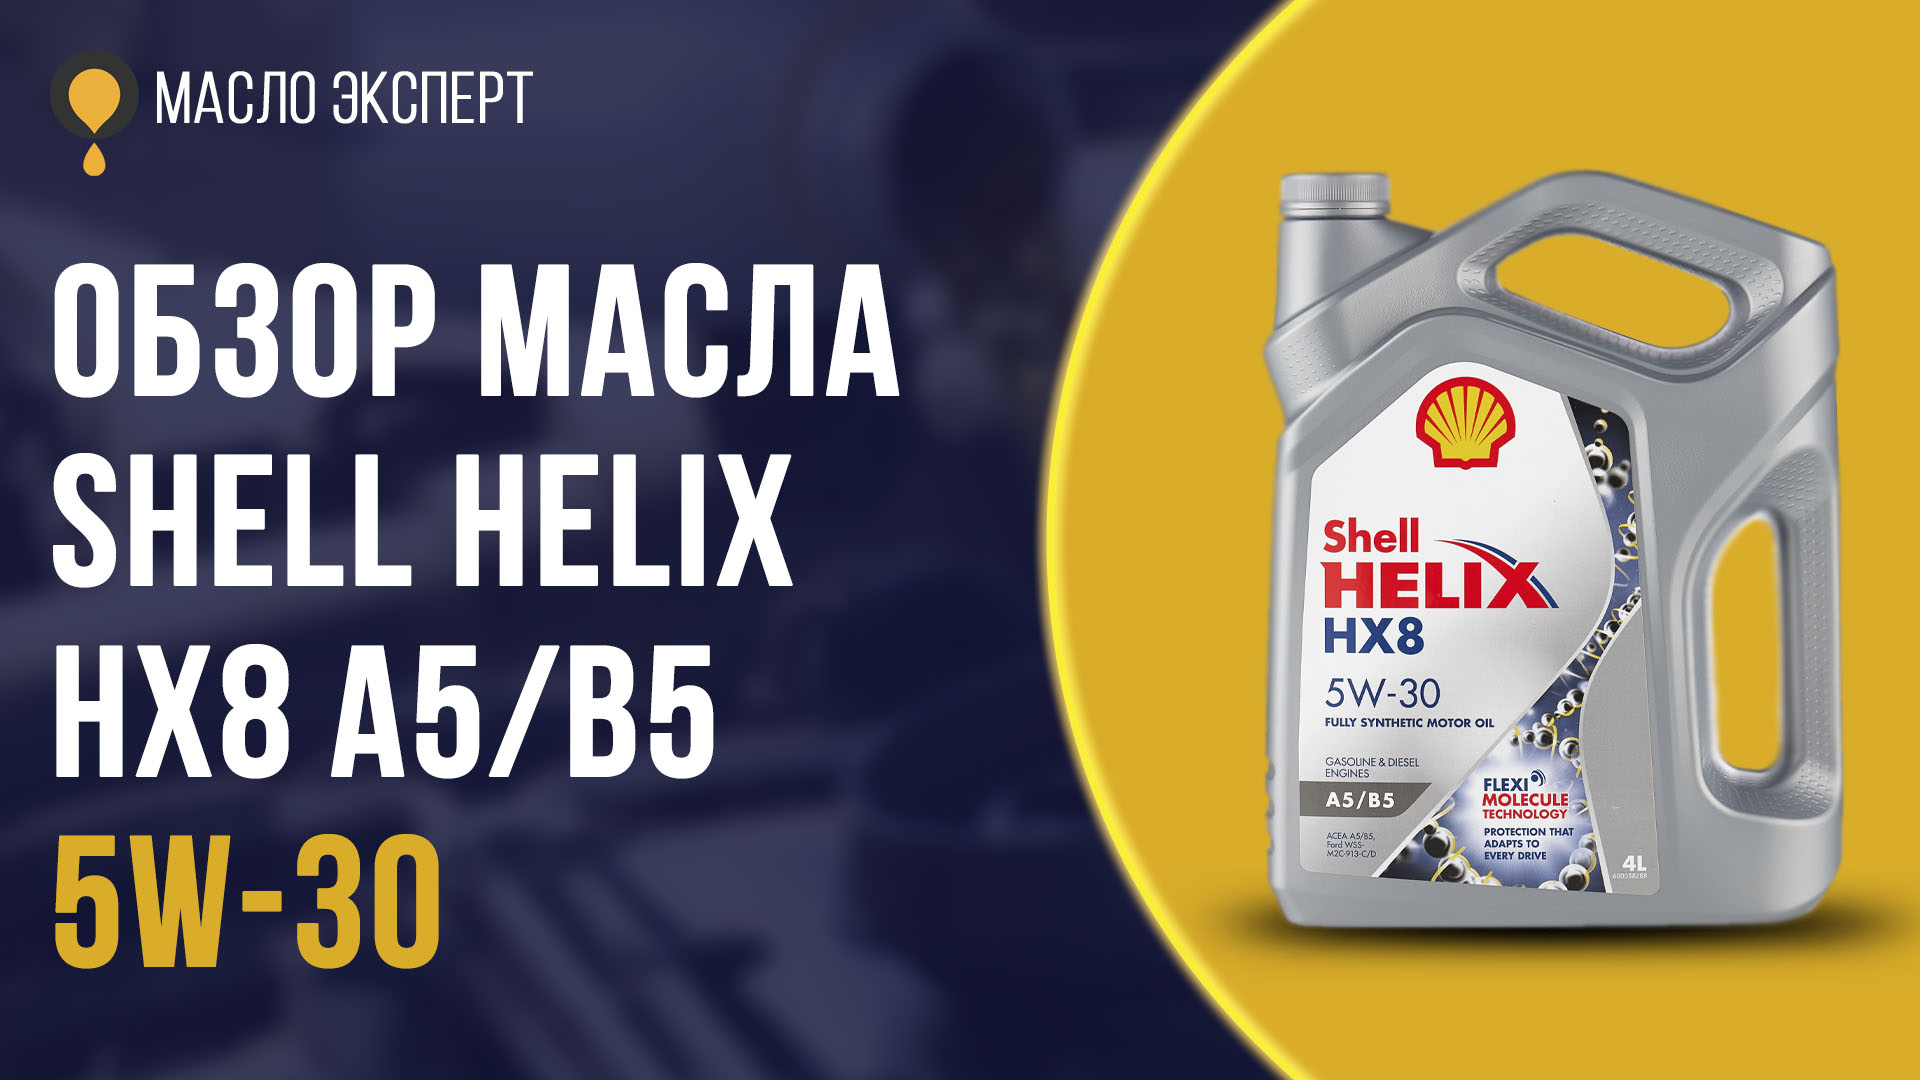 Сайт масла shell. Polo Expert Oil. Шелл Хеликс или зик: какое масло лучше? Сравнение и отзывы.